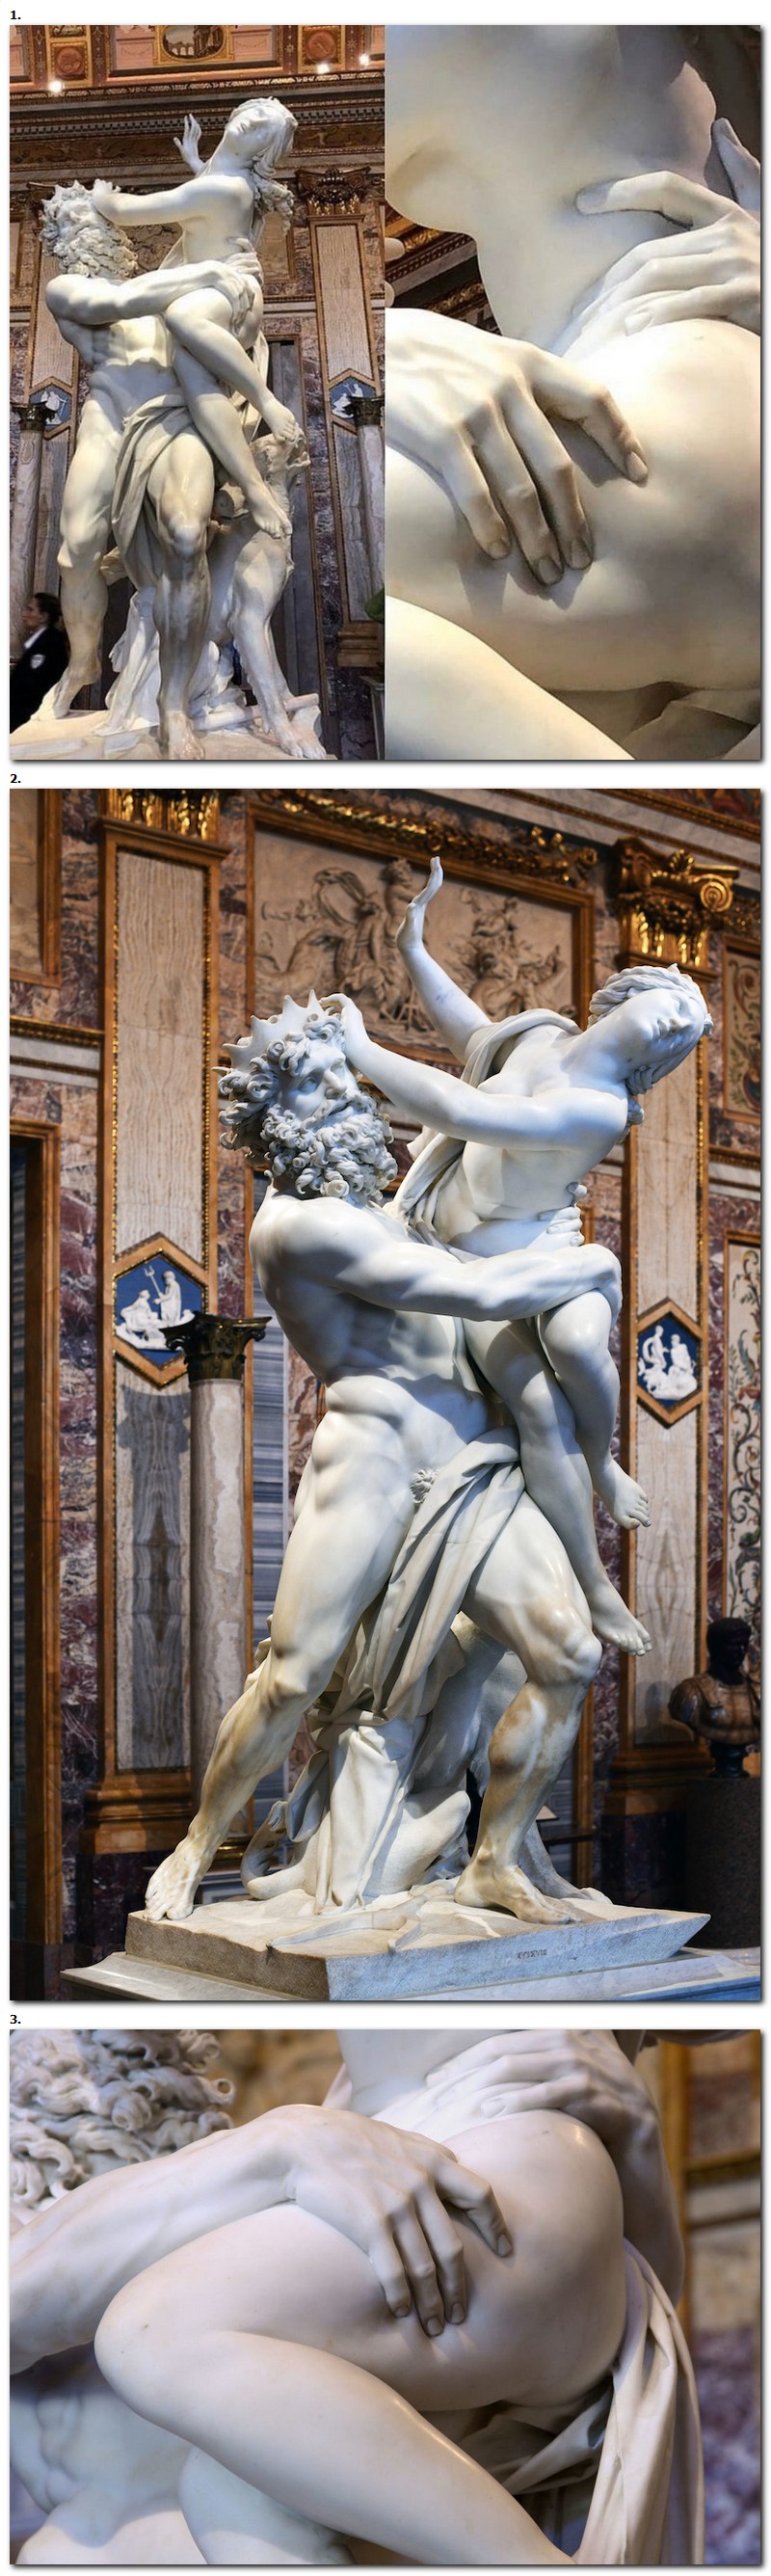 Le viol de Proserpine, une sculpture baroque du XVIIe siècle réalisée par l'artiste italien Gian Lorenzo Bernini à l'âge de 23 ans